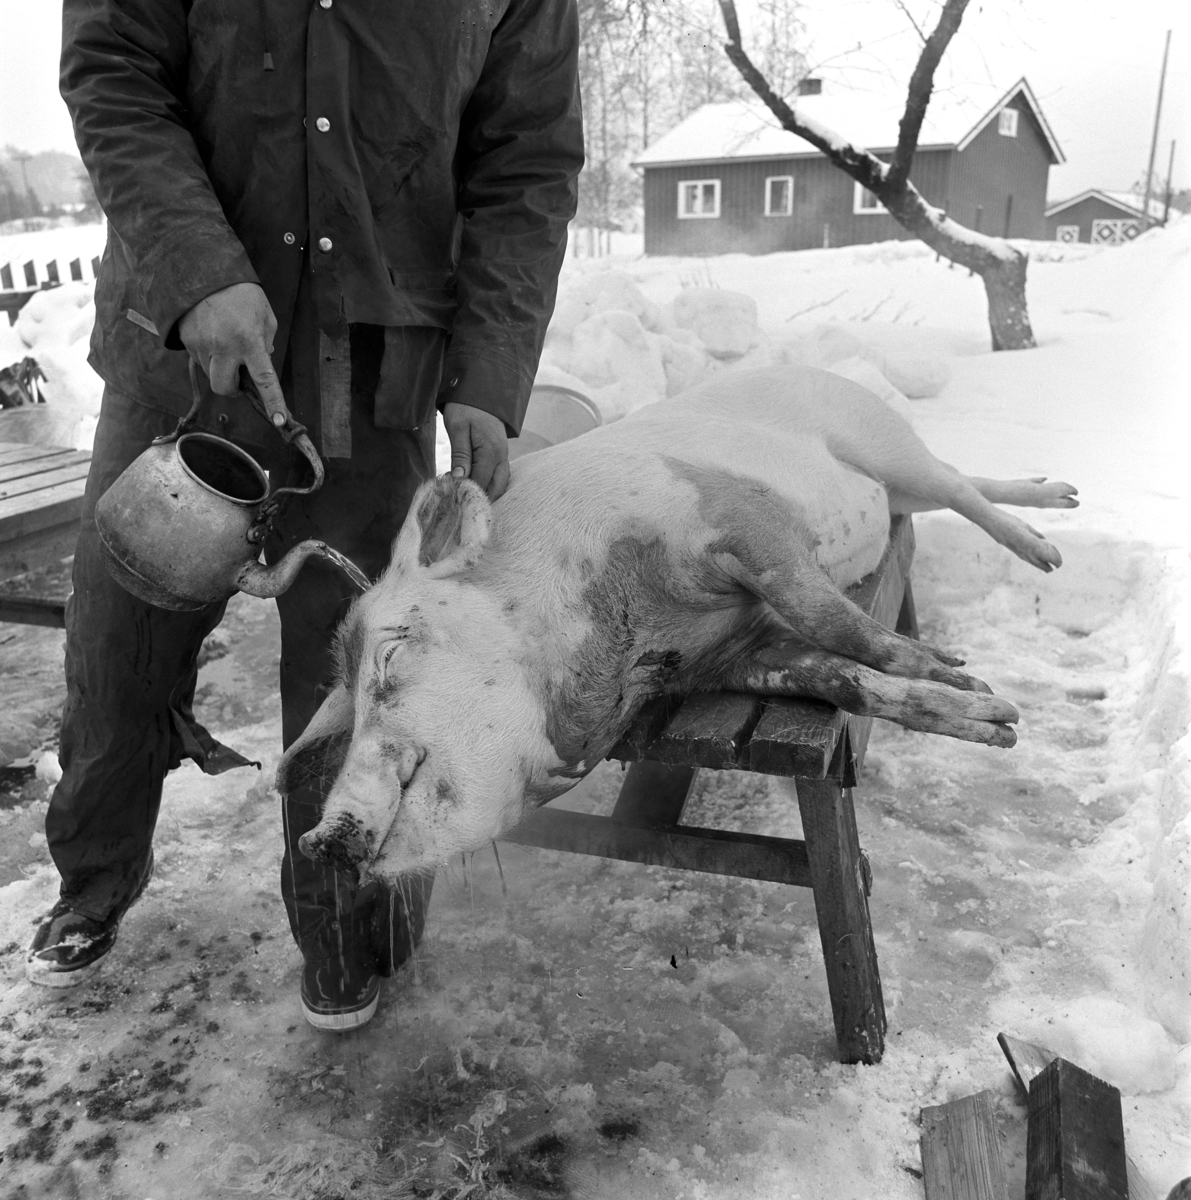 Dokumentasjon av griseslakting i 1977, på Lunde i Gaupen, Ringsaker. Bygdeslakter. Skåldevann helles over grisen. Vannet måtte ha riktig temperatur, ikke for kaldt, men heller ikke for varmt. 